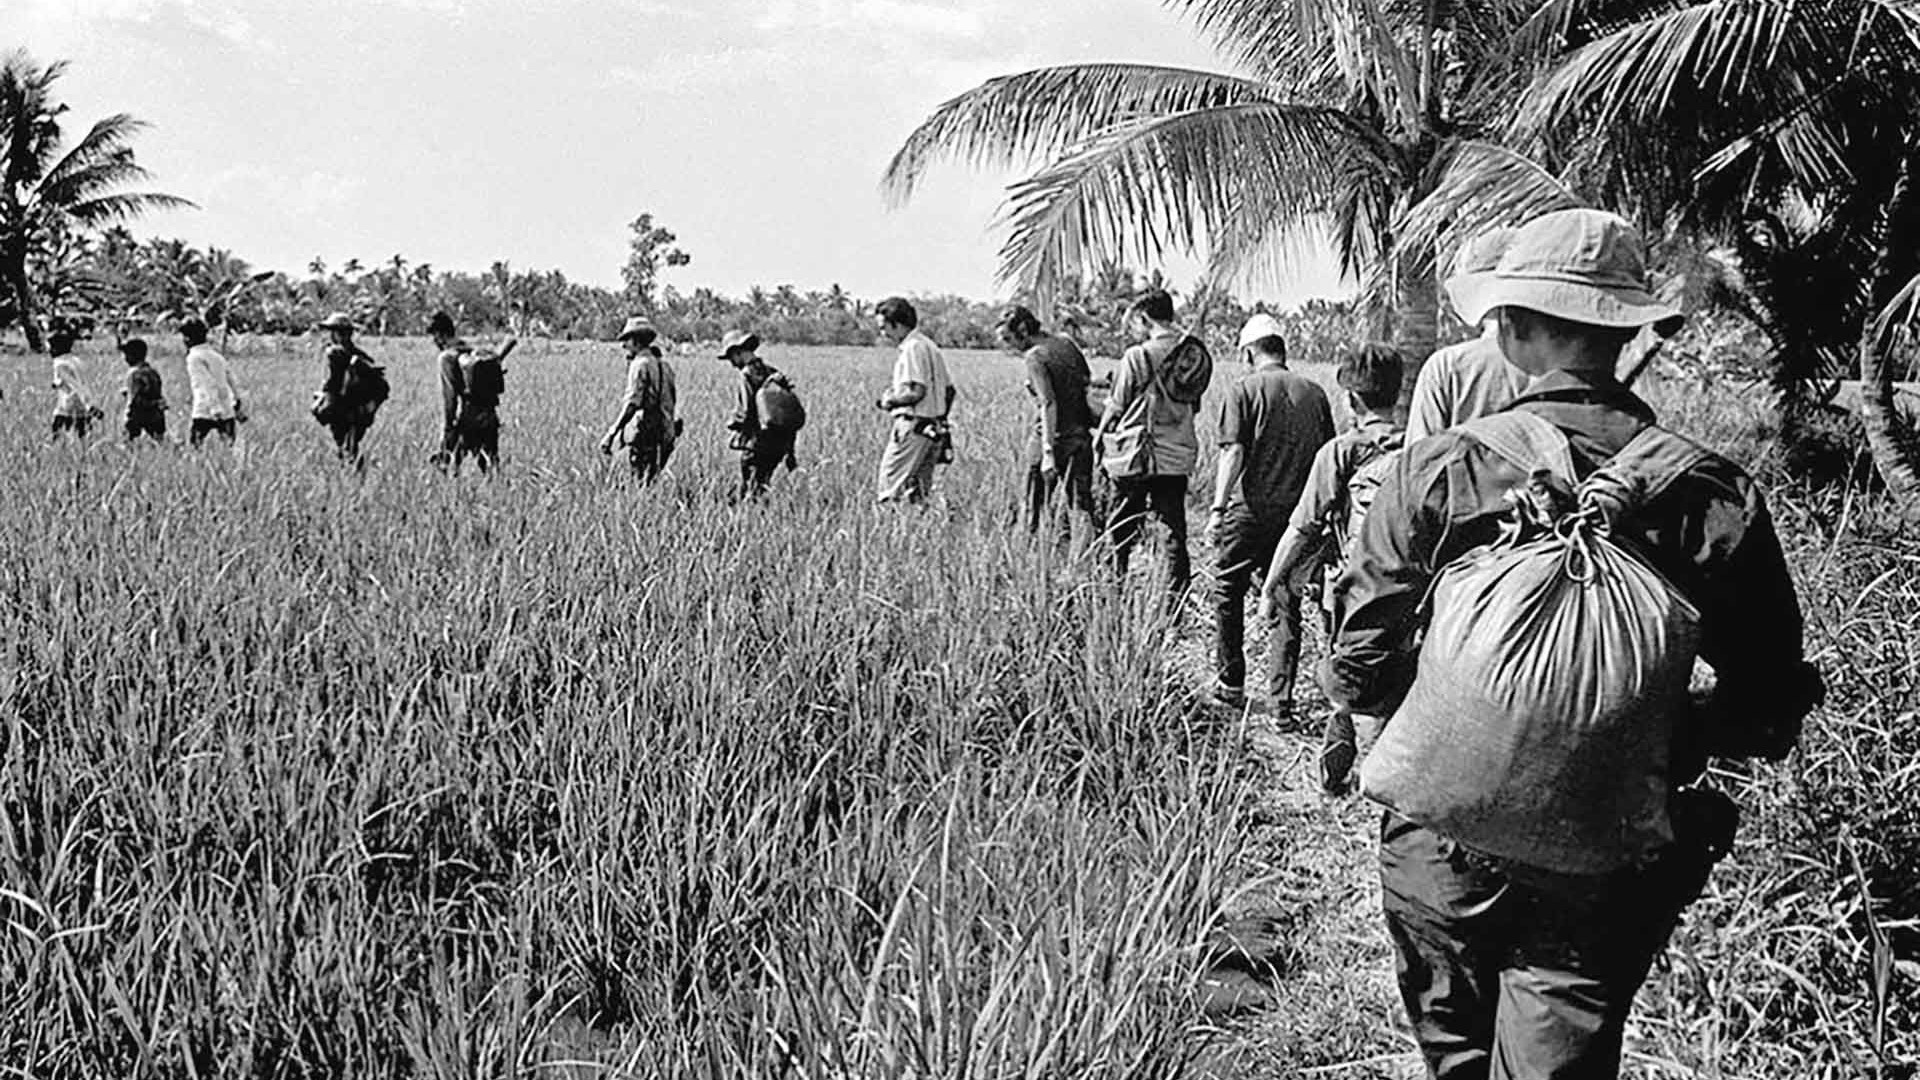 Nhớ ‘Một người Việt trầm lặng’ * tại Sài Gòn năm 1973